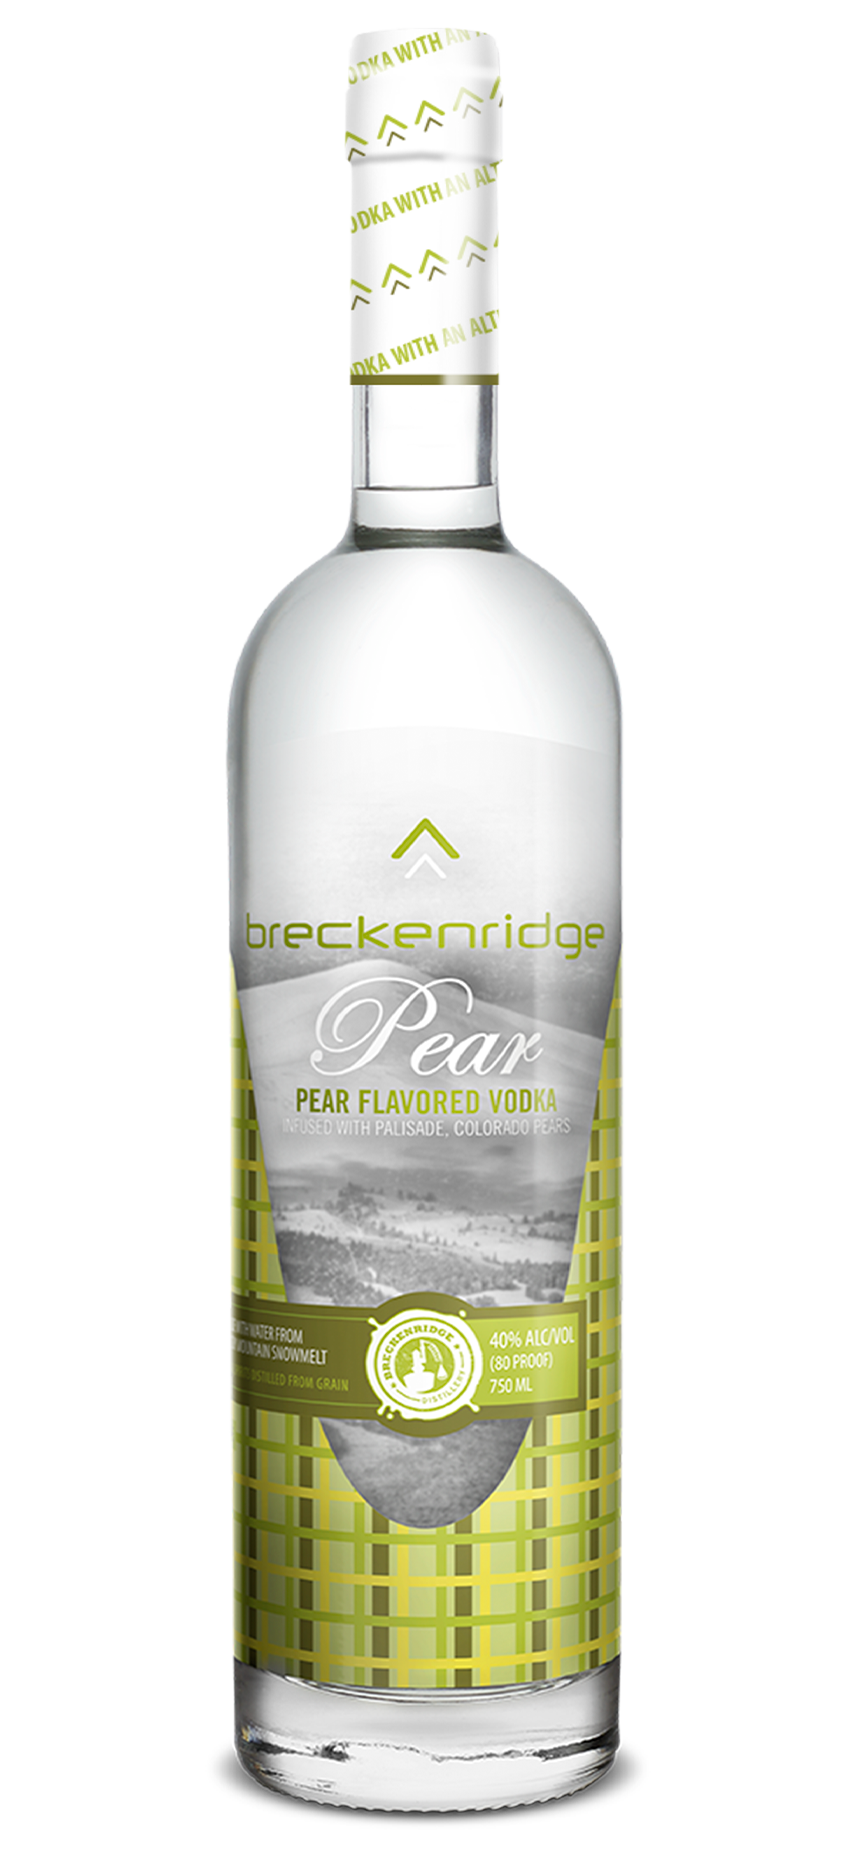 Breckenridge Pear Flavored Vodka